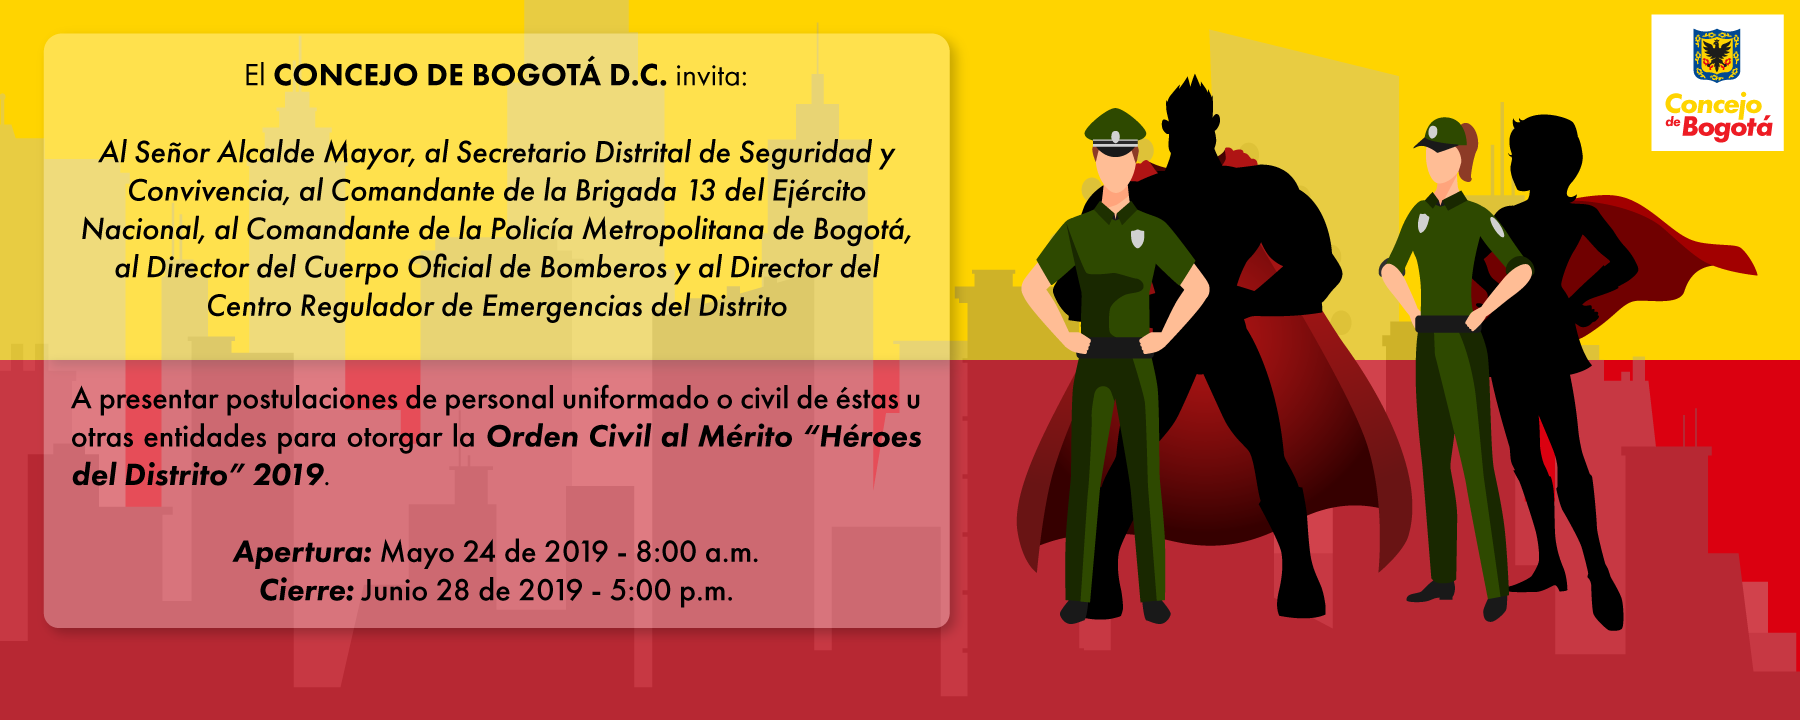 Imagen informativa de la Orden Civil al Mérito "Héroes del Distrito